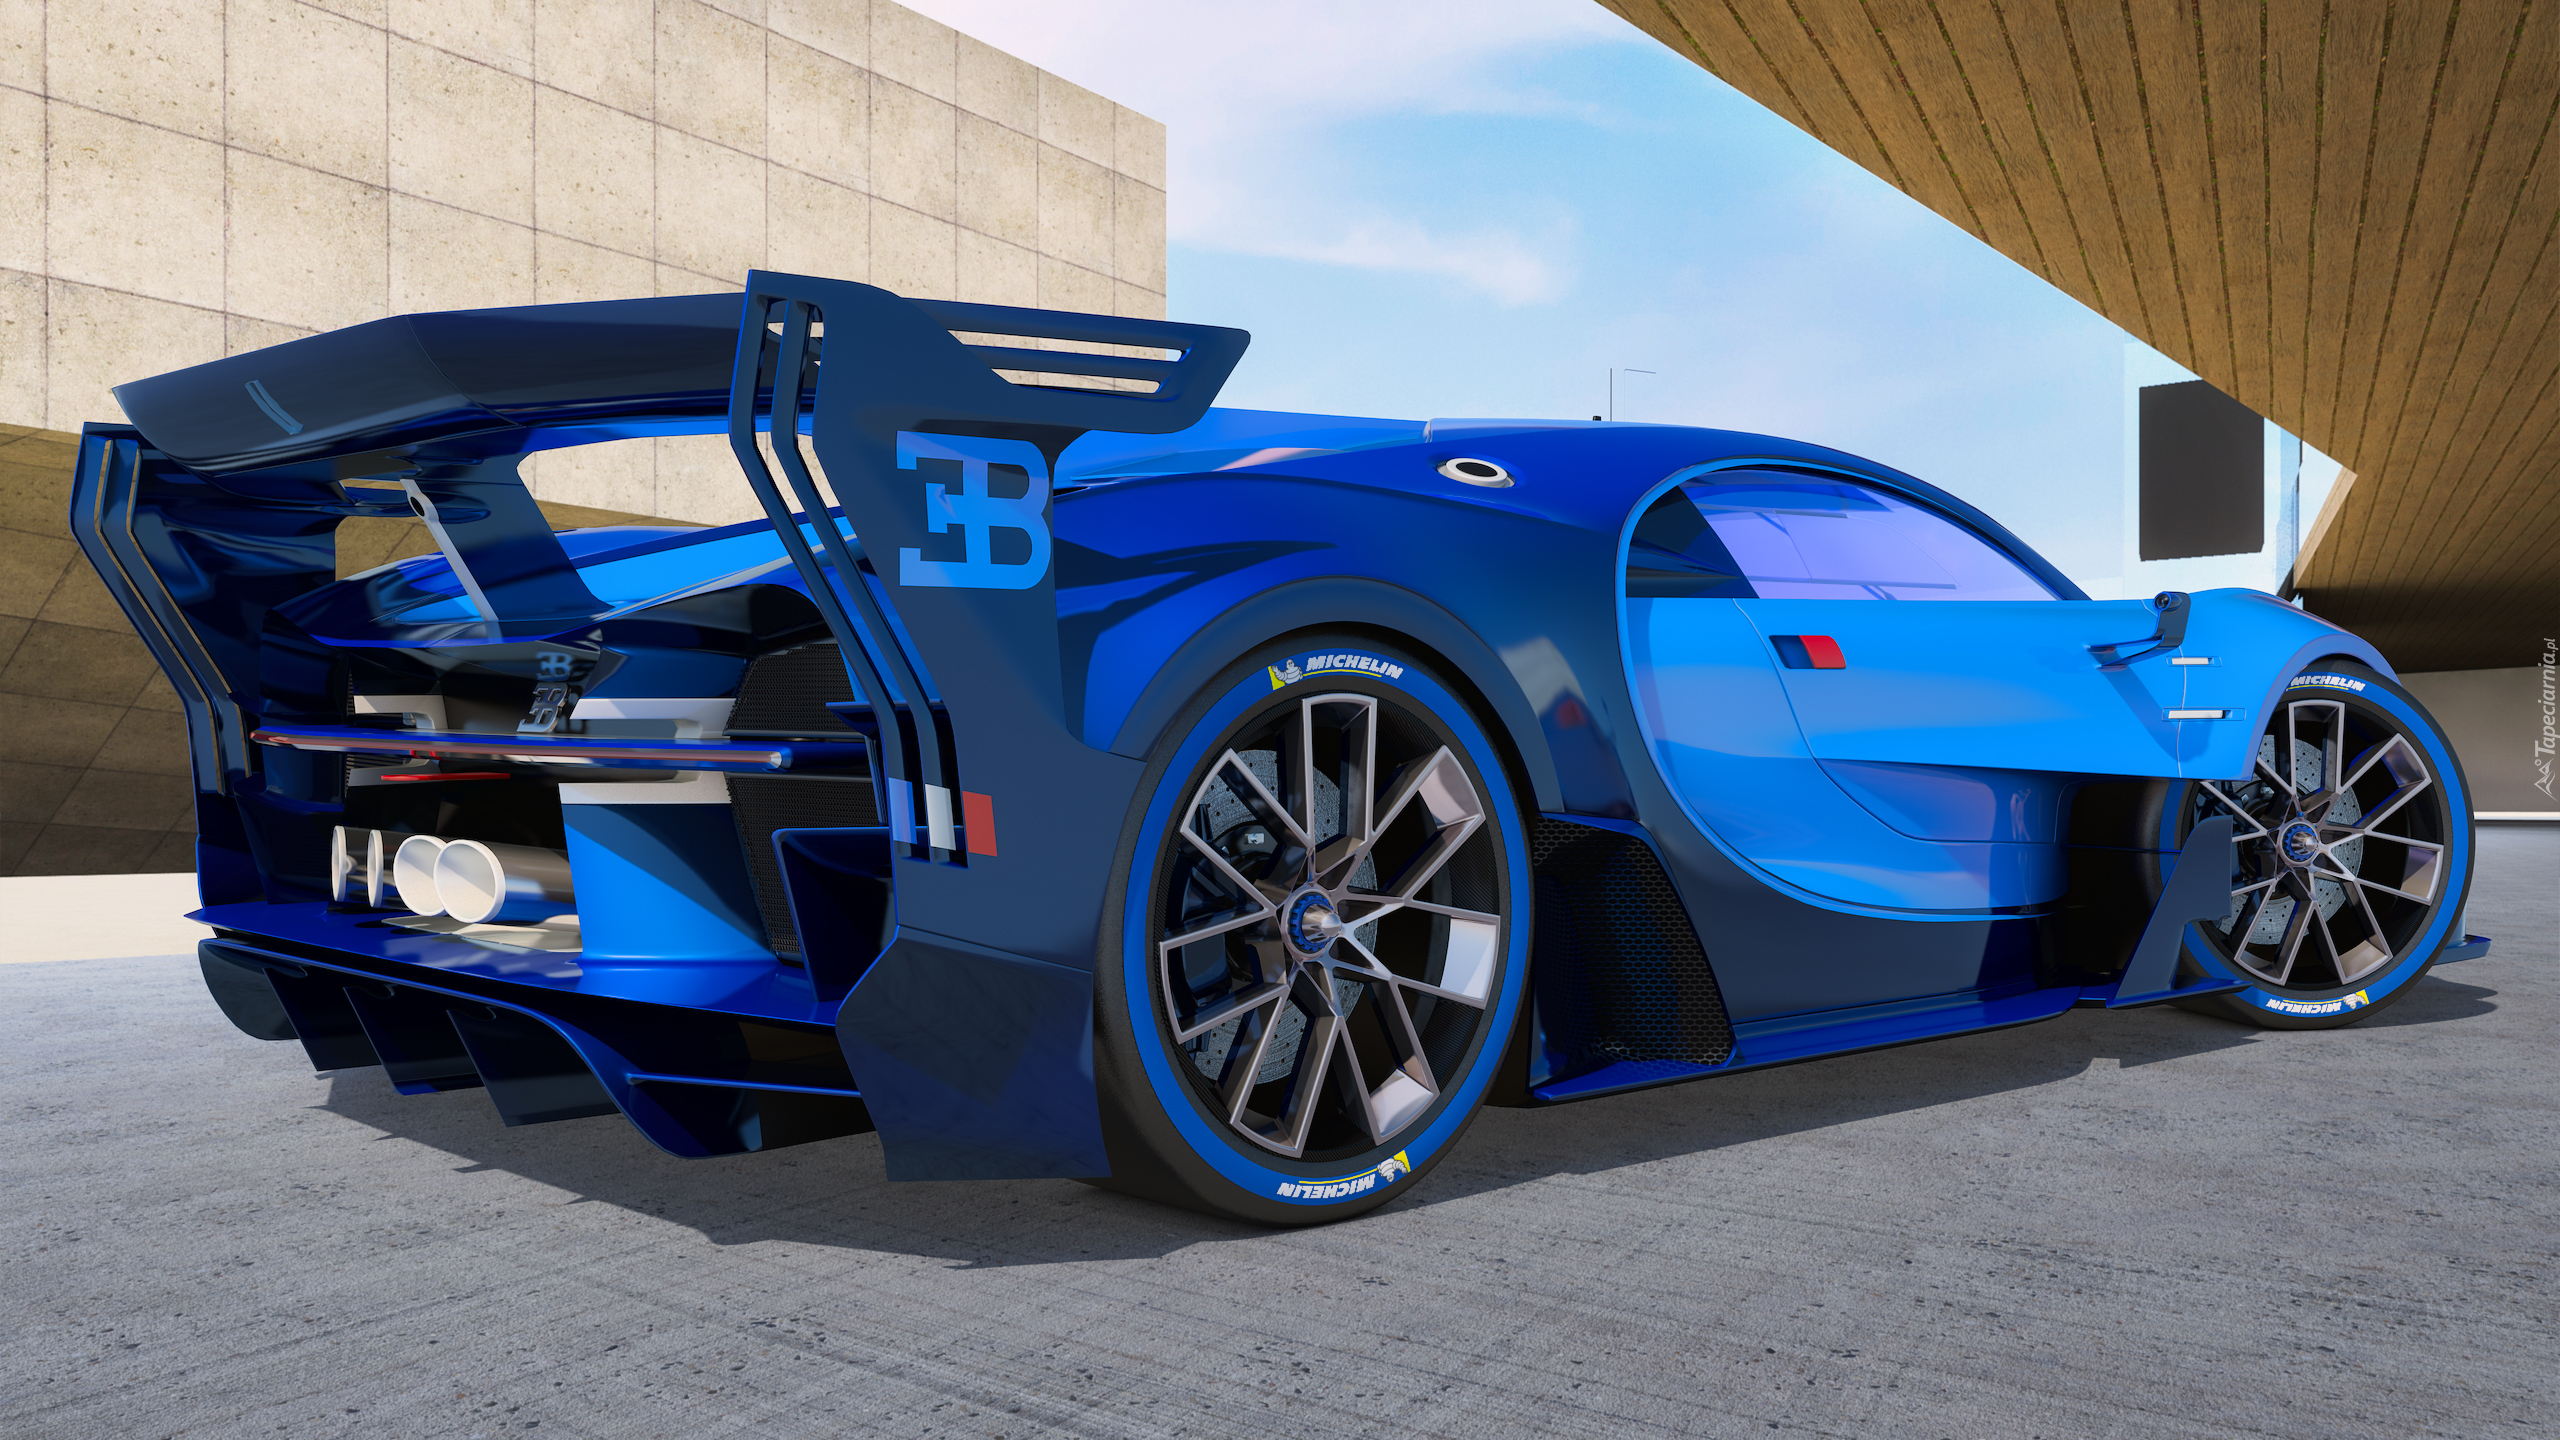 Samochód, Bugatti Vision Gran Turismo, 2015